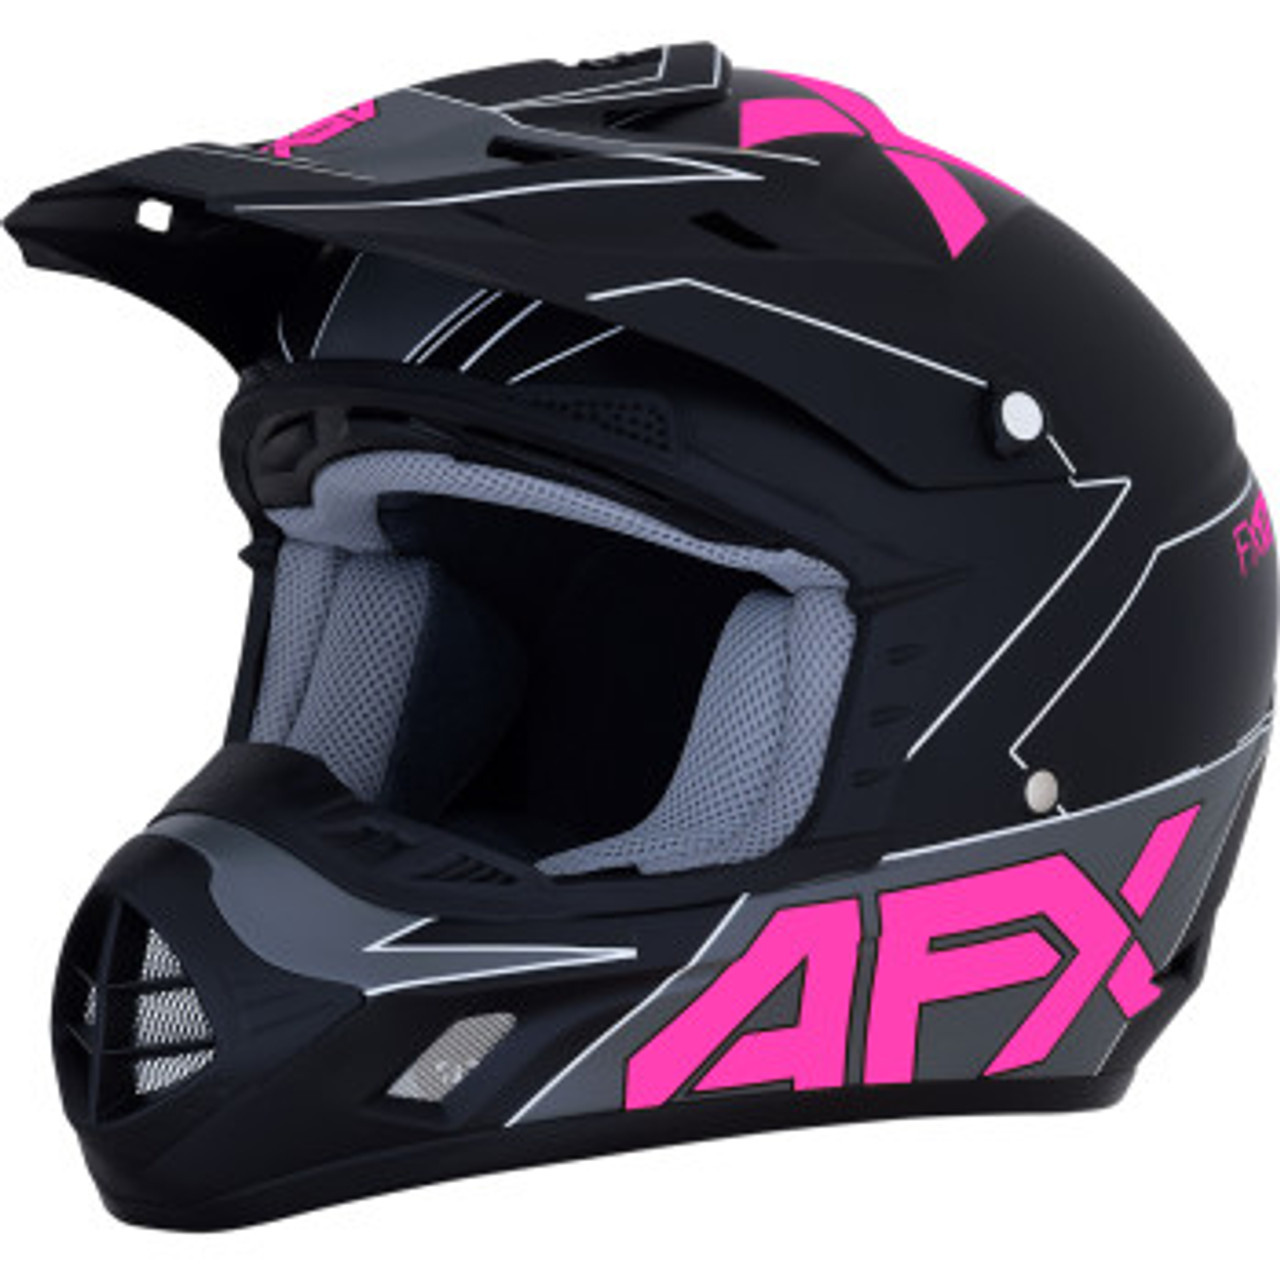 AFX FX-17 Helmet - Aced - Matte Black/Pink